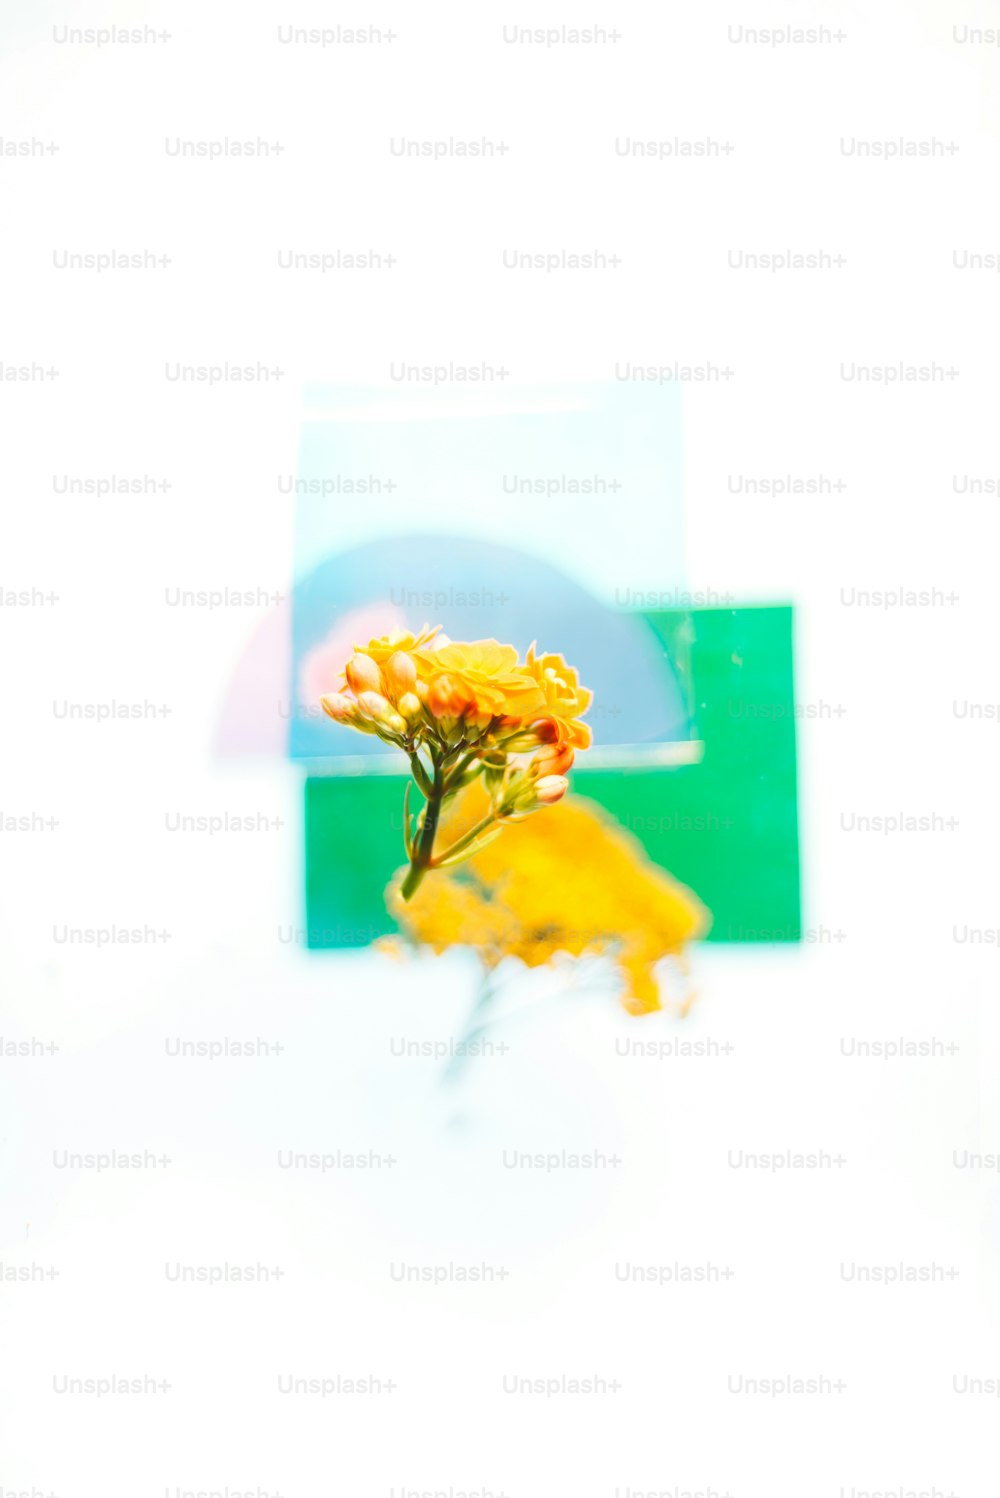 une image d’une fleur jaune devant un fond blanc